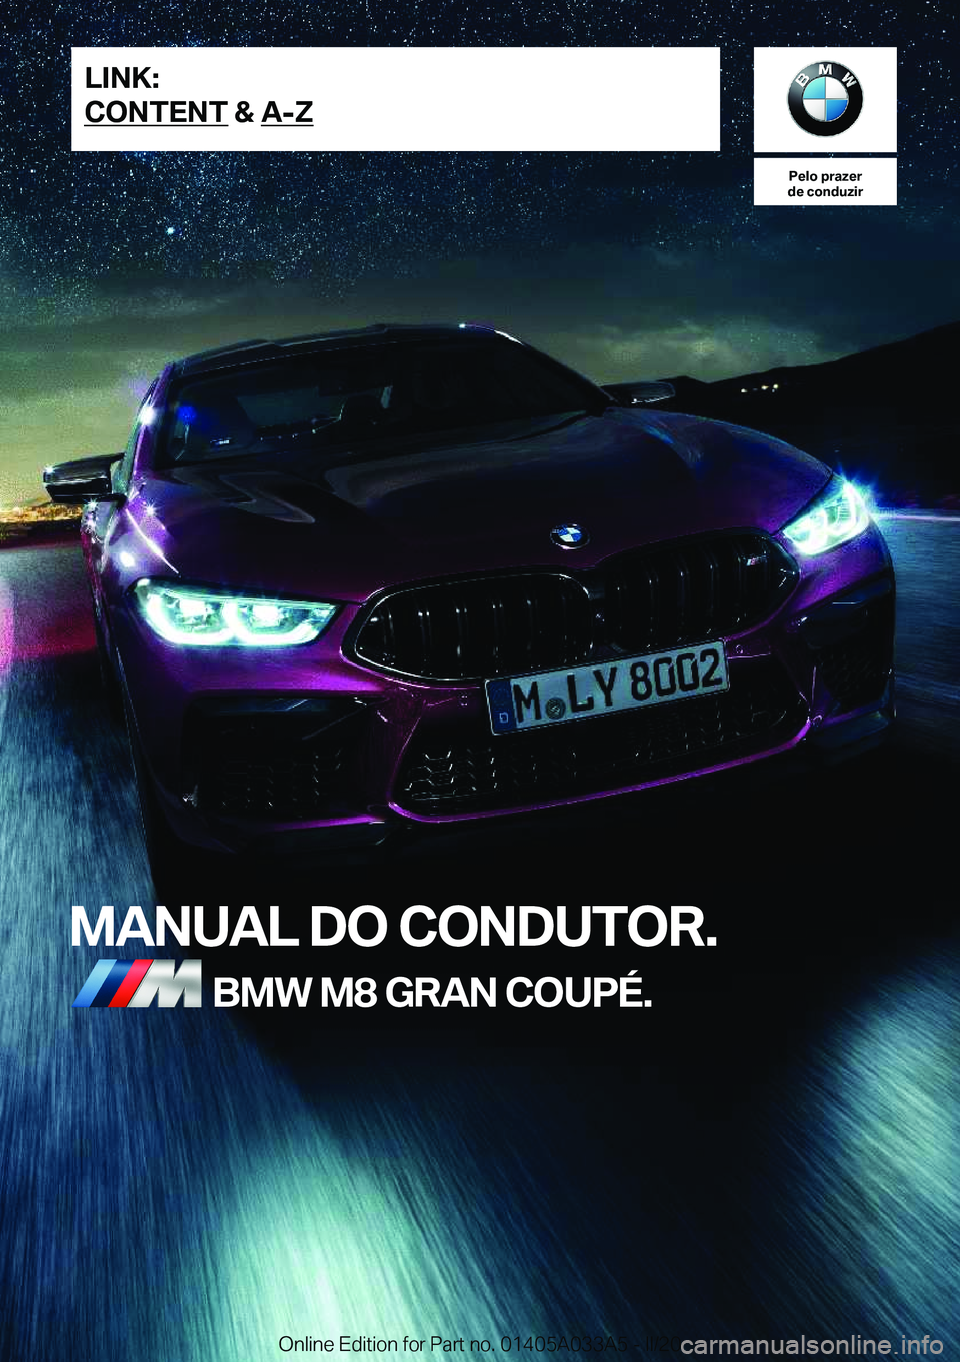 BMW M8 GRAN COUPE 2020  Manual do condutor (in Portuguese) �P�e�l�o��p�r�a�z�e�r
�d�e��c�o�n�d�u�z�i�r
�M�A�N�U�A�L��D�O��C�O�N�D�U�T�O�R�.�B�M�W��M�8��G�R�A�N��C�O�U�P�É�.�L�I�N�K�:
�C�O�N�T�E�N�T��&��A�-�Z�O�n�l�i�n�e��E�d�i�t�i�o�n��f�o�r��P�a